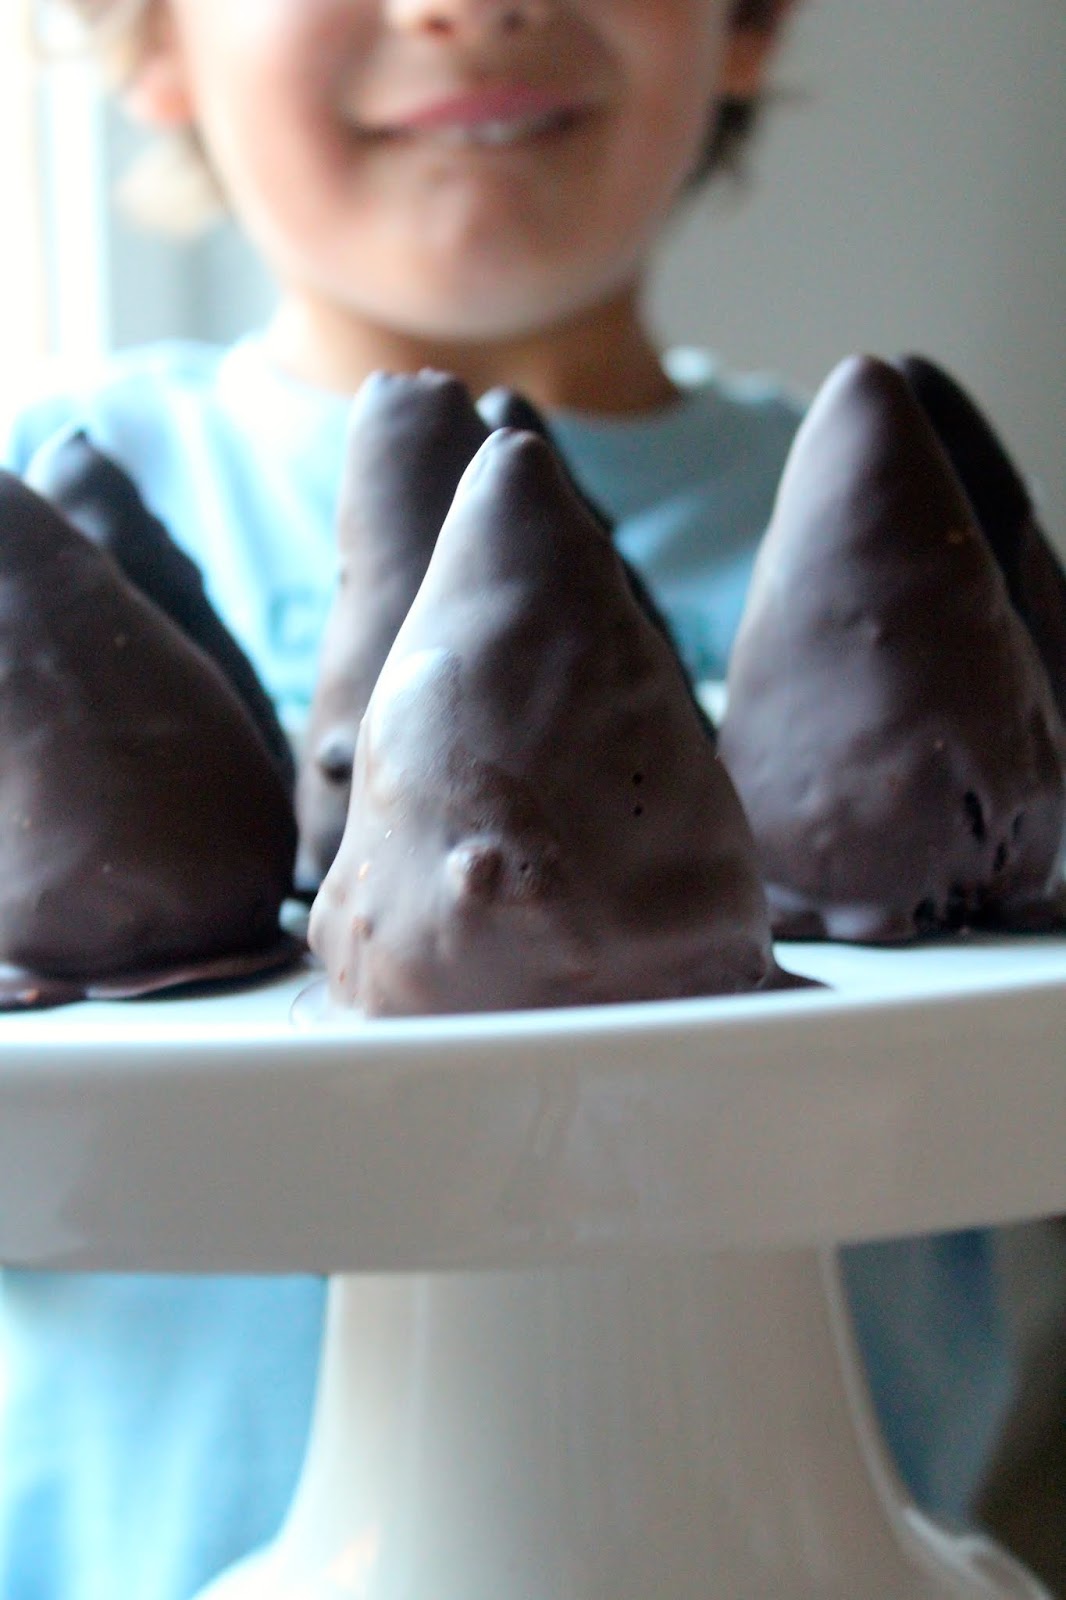 Pirâmides de Chocolate